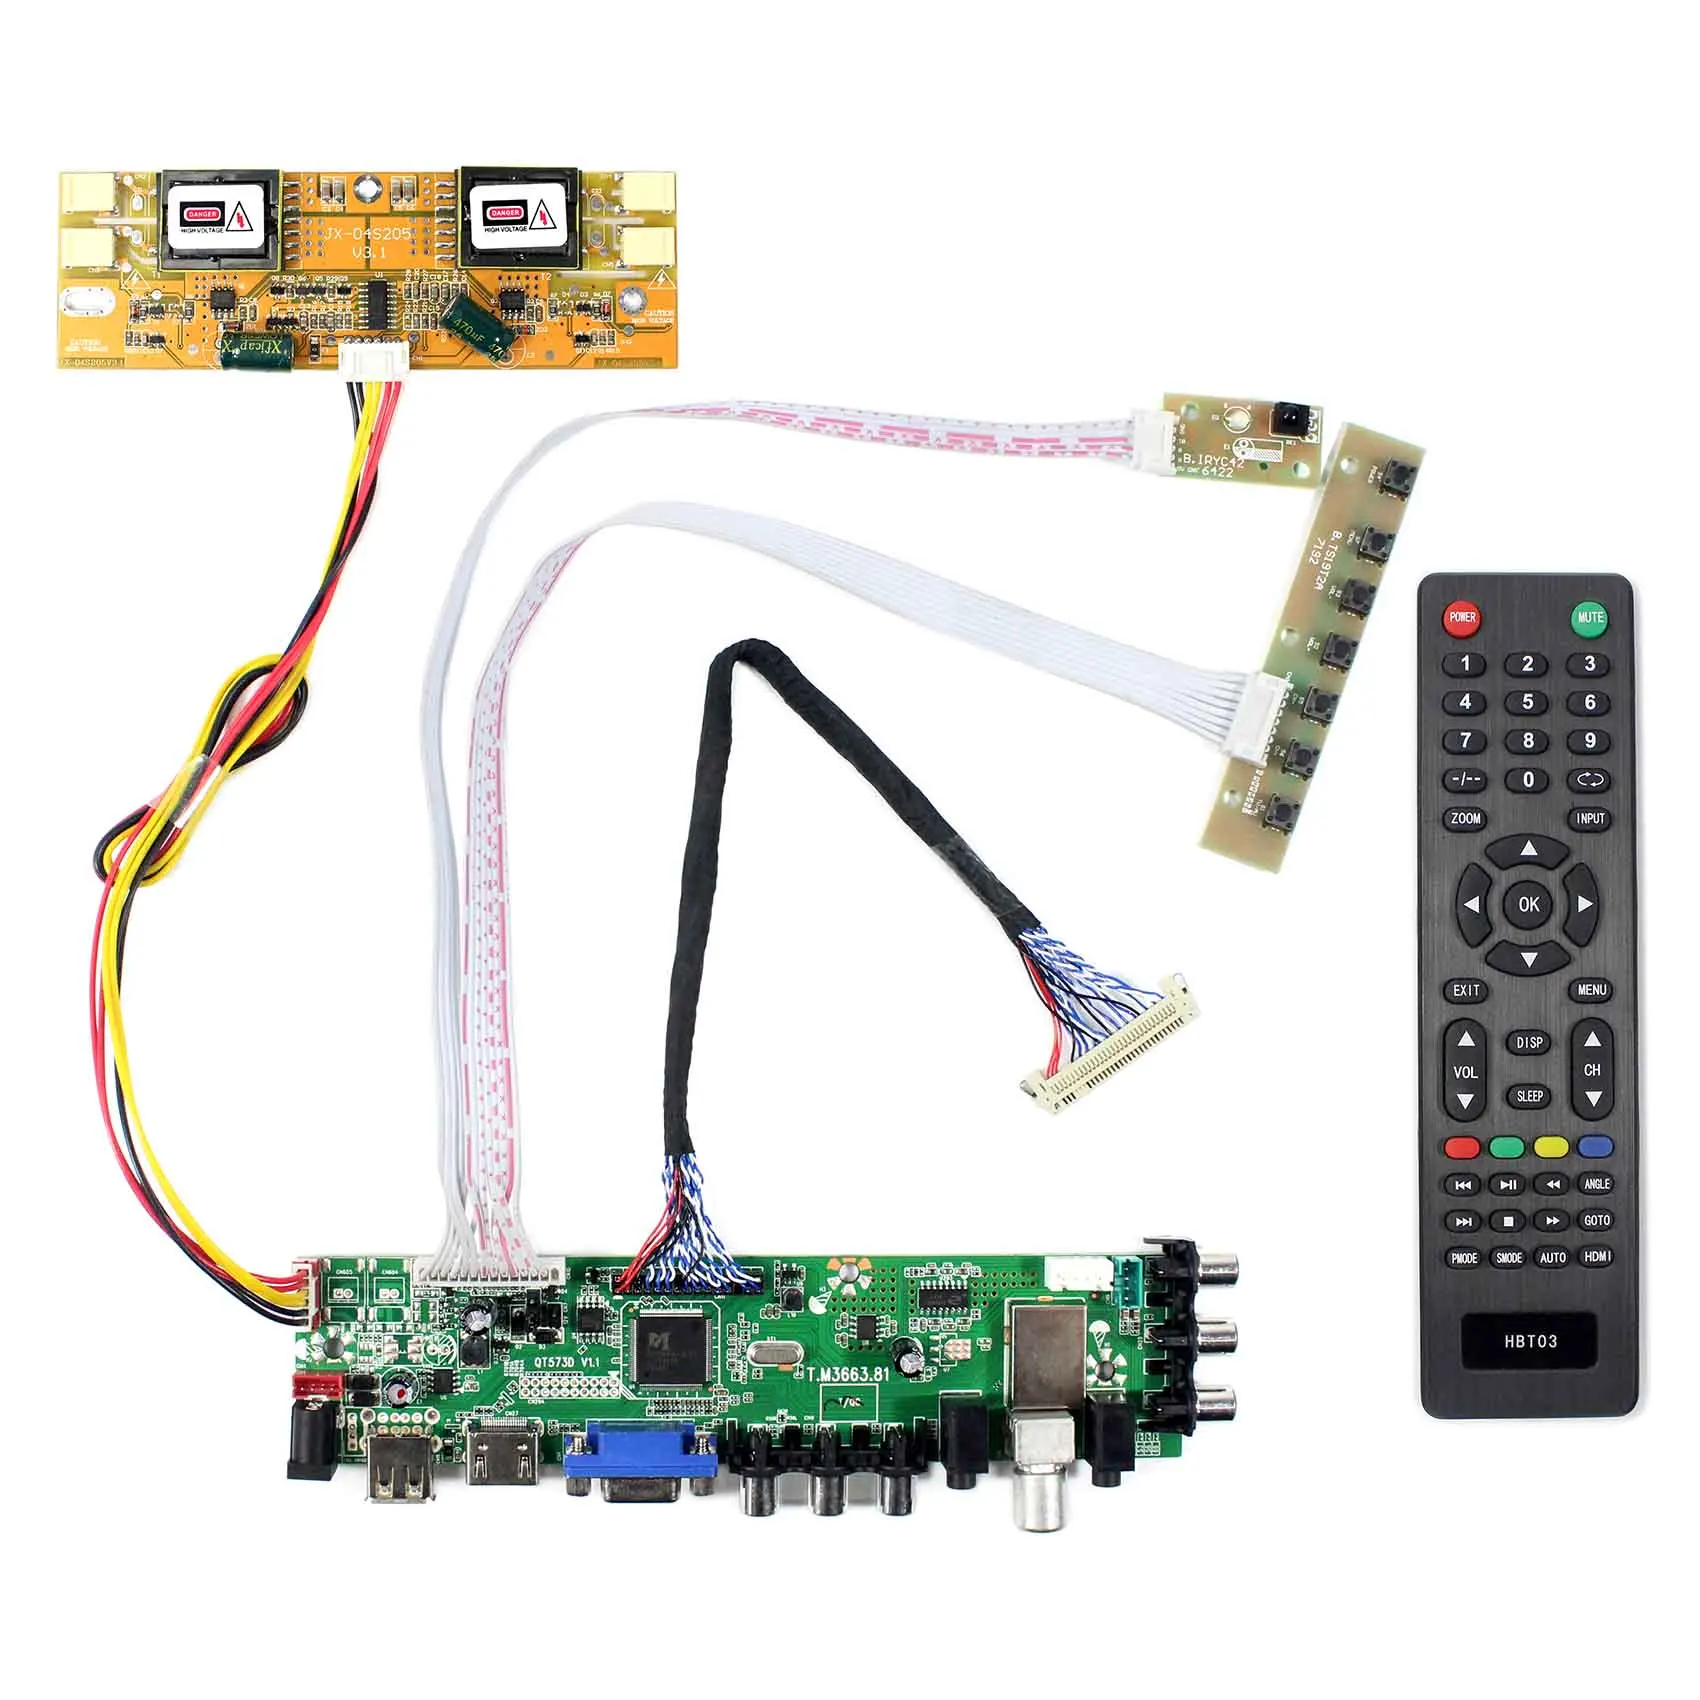 HD MI VGA AV USB ATV DTV ЖК-плата контроллера работает для 4 CCF 30 контактов lvds 20 